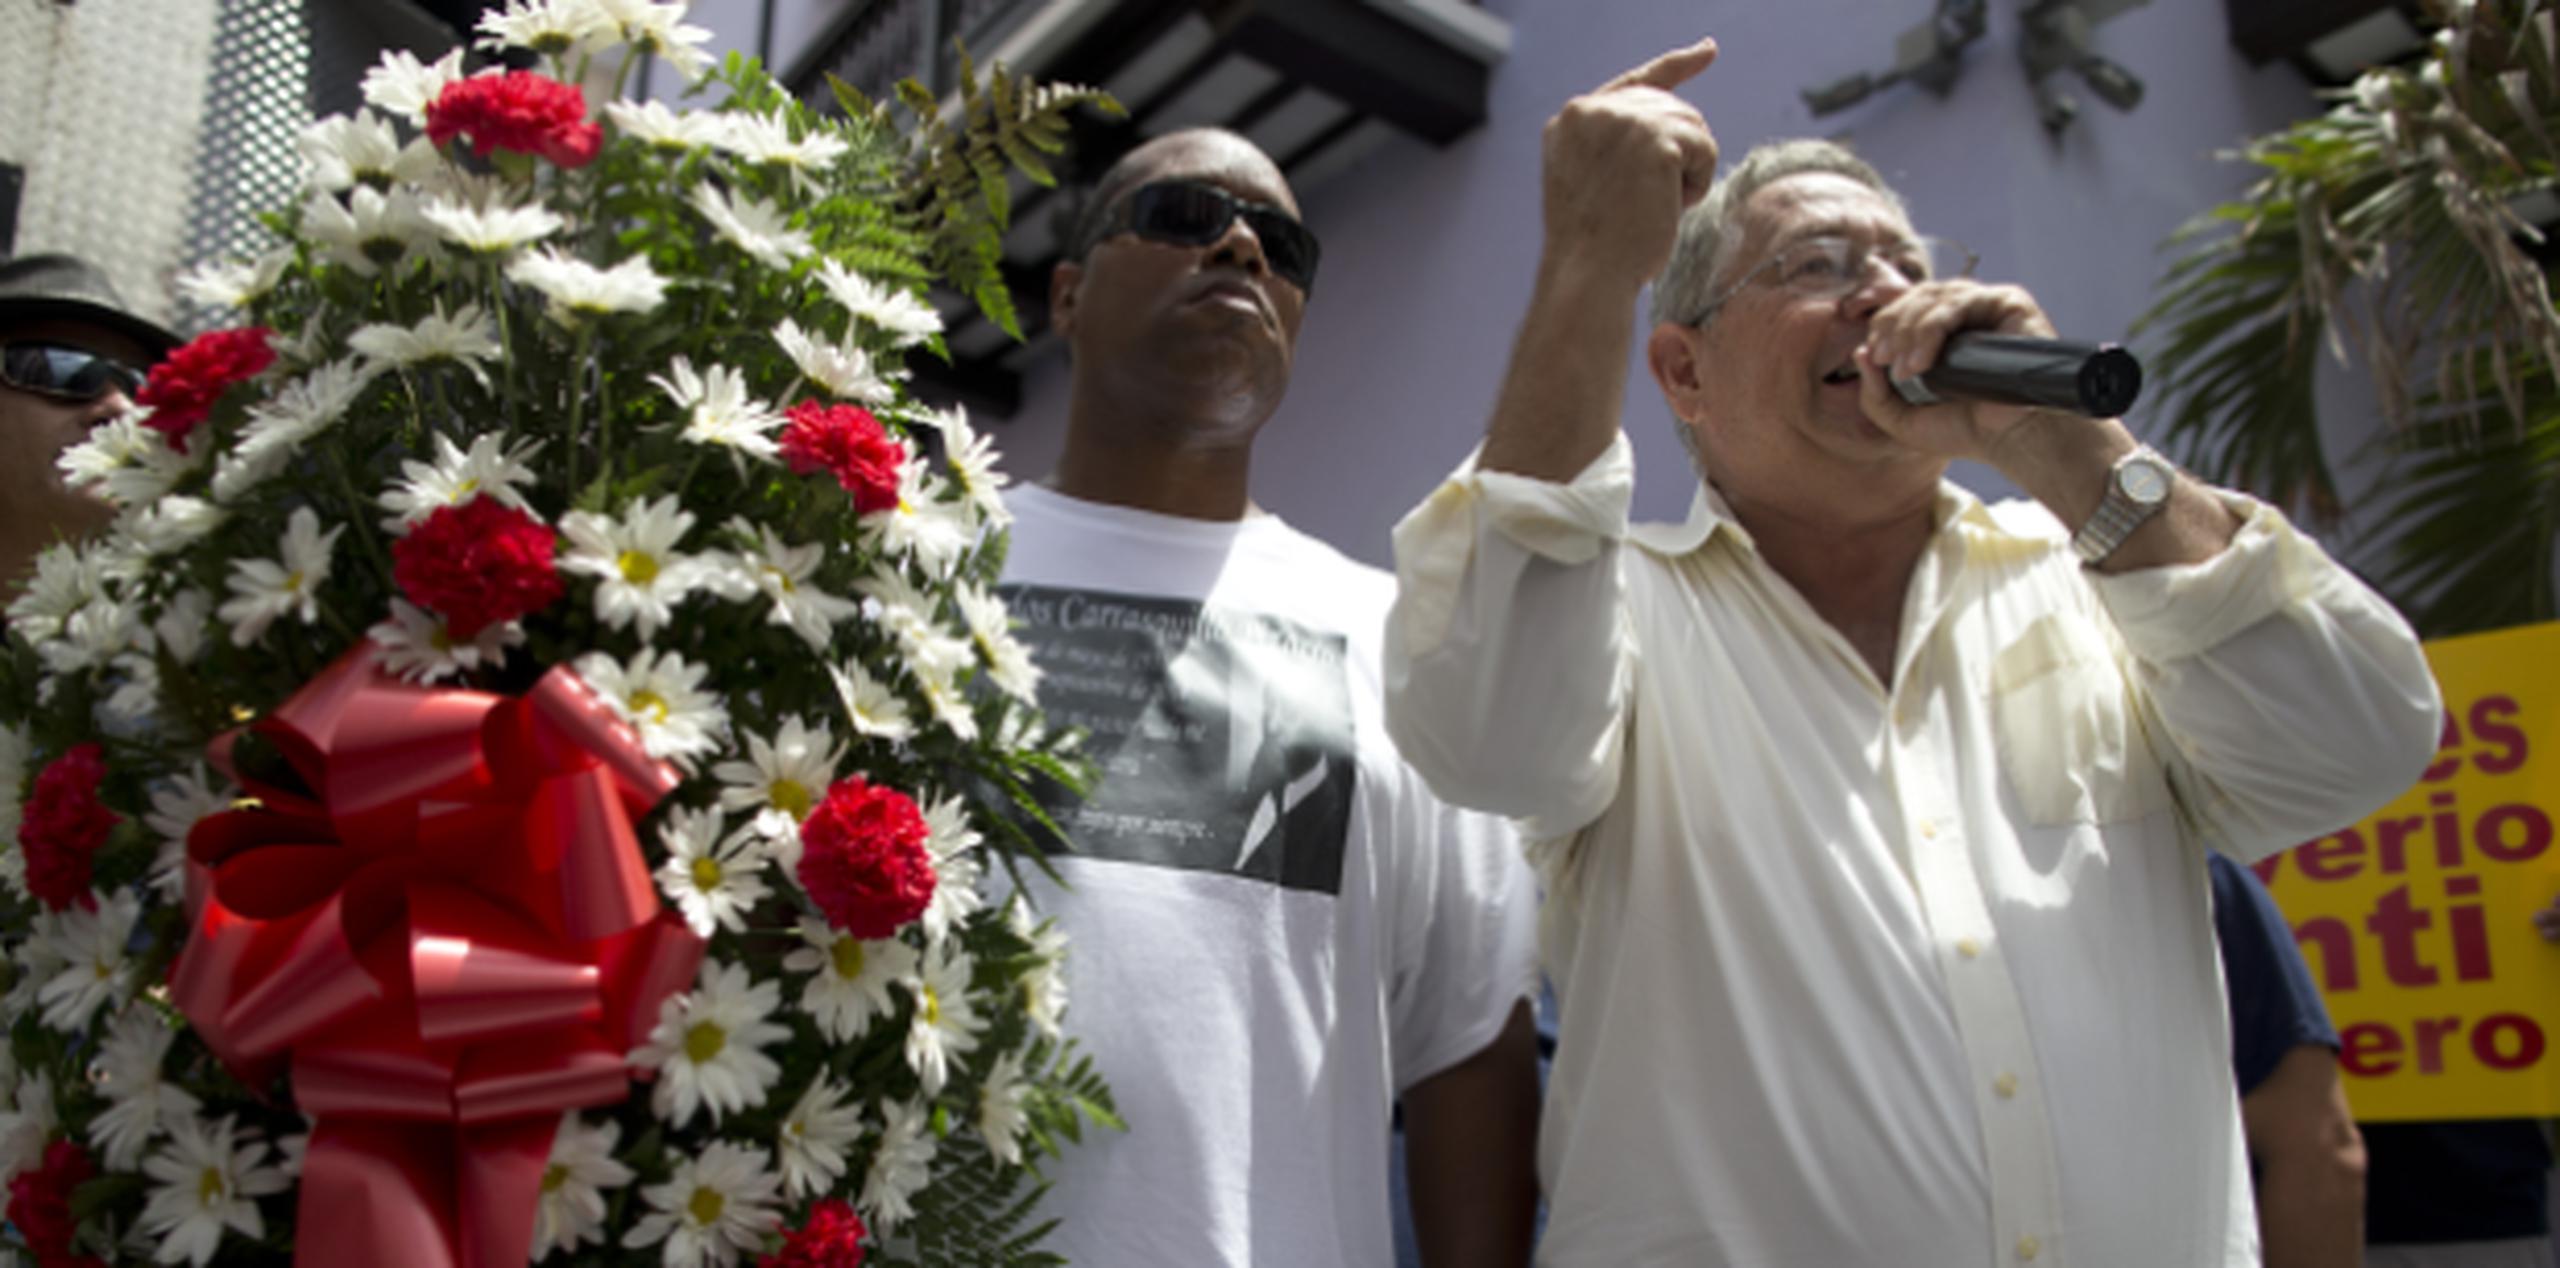 Carlos Carrasquillo, hijo de un bombero fallecido del mismo nombre, y el líder obrero José Tirado, llevan flores a Fortaleza. (teresa.canino@gfrmedia.com)